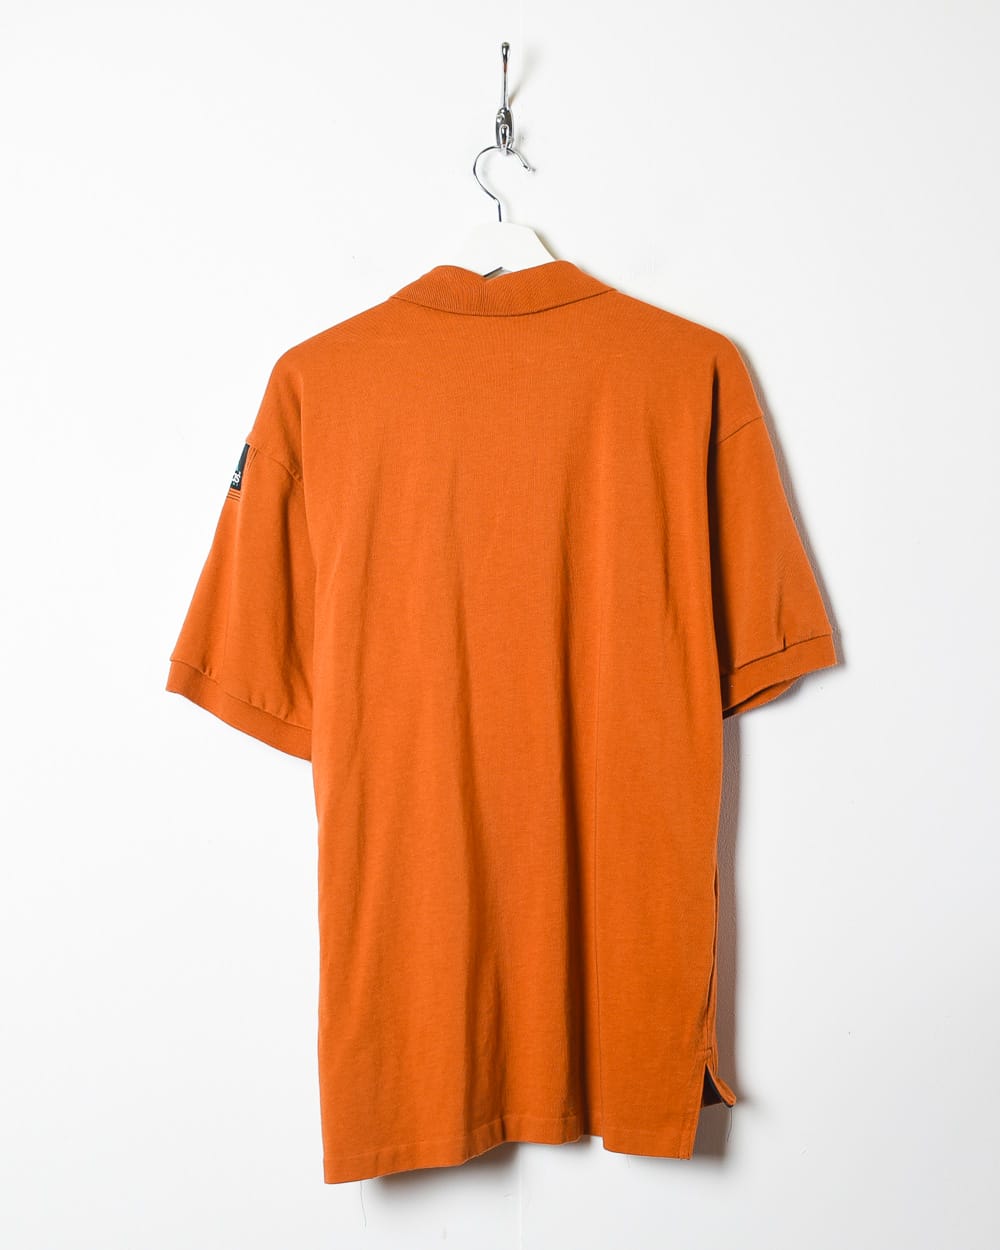 Orange Adidas Equipment Polo Shirt - Large